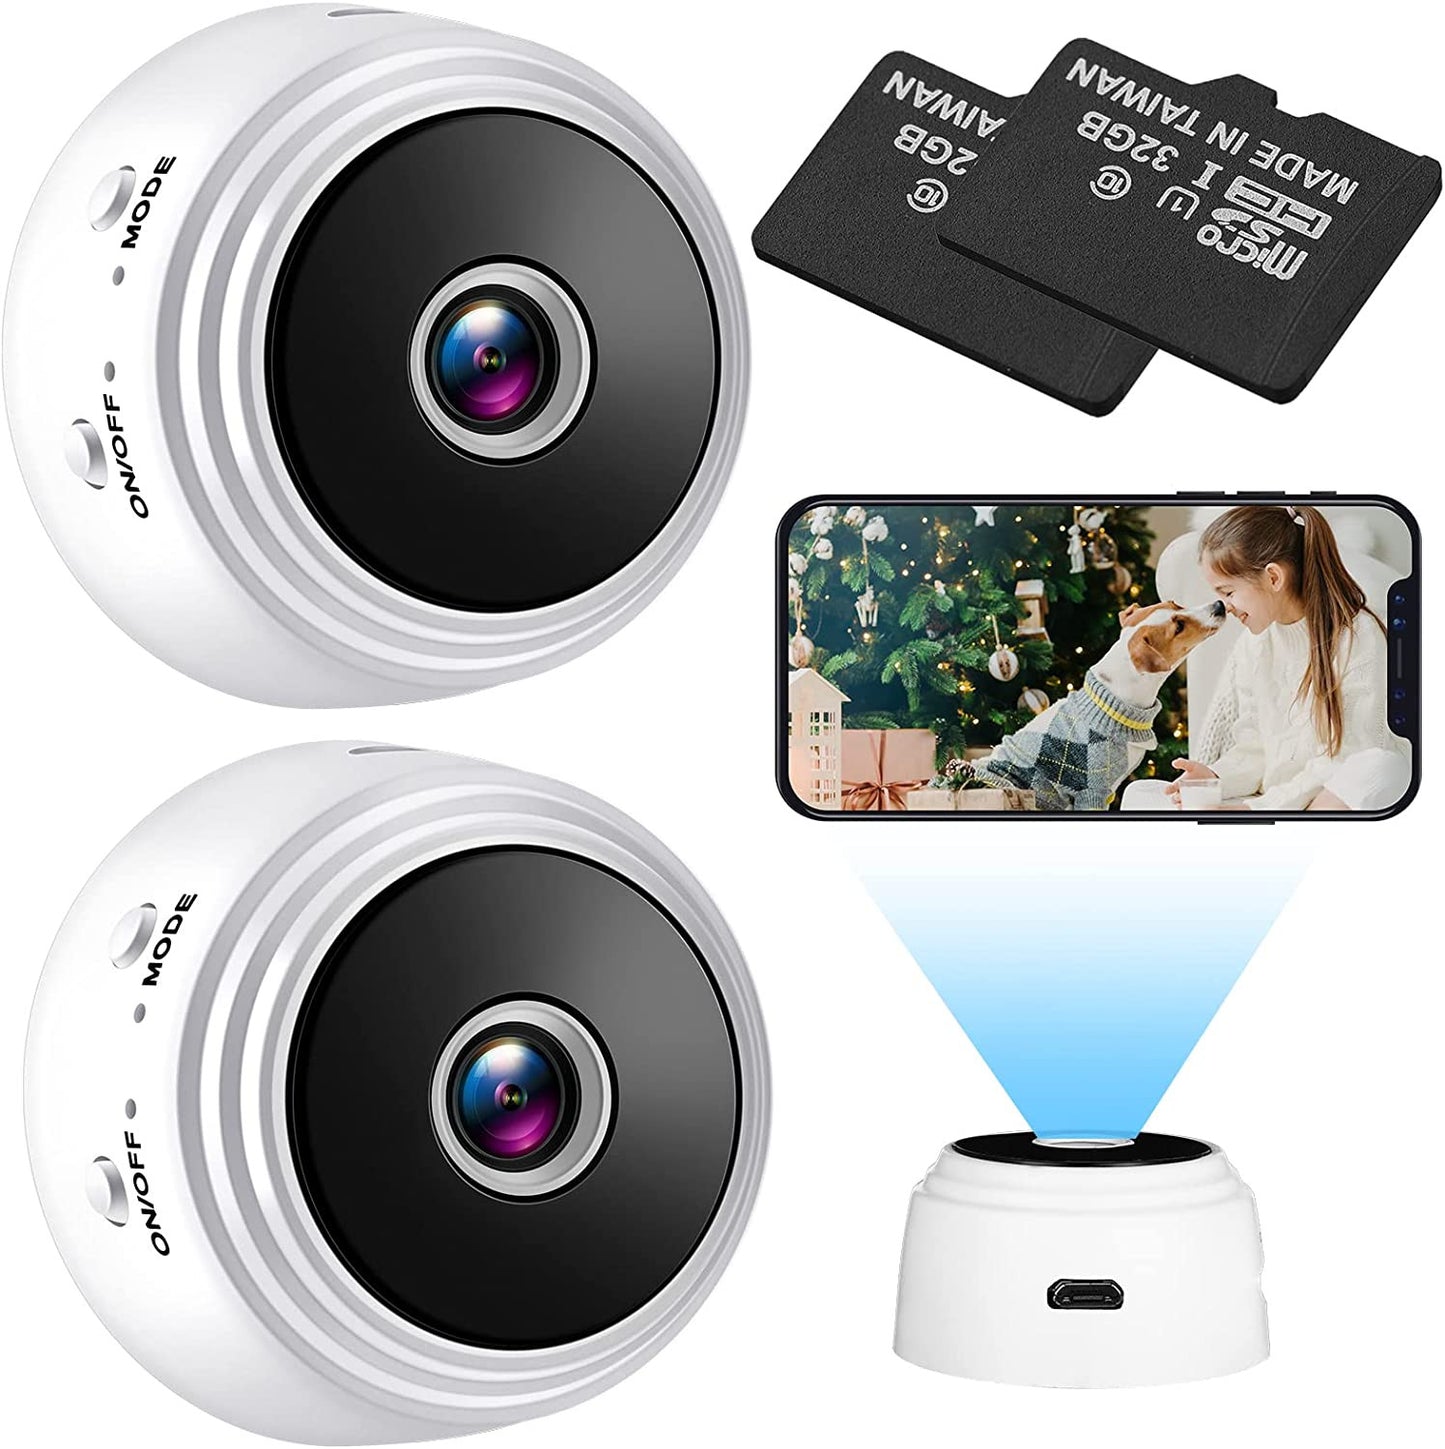  SecureGuard HD 720p - Marco de fotos digital para cámara espía  residencial, cámara espía oculta, dispositivo espía (nueva línea económica)  : Electrónica